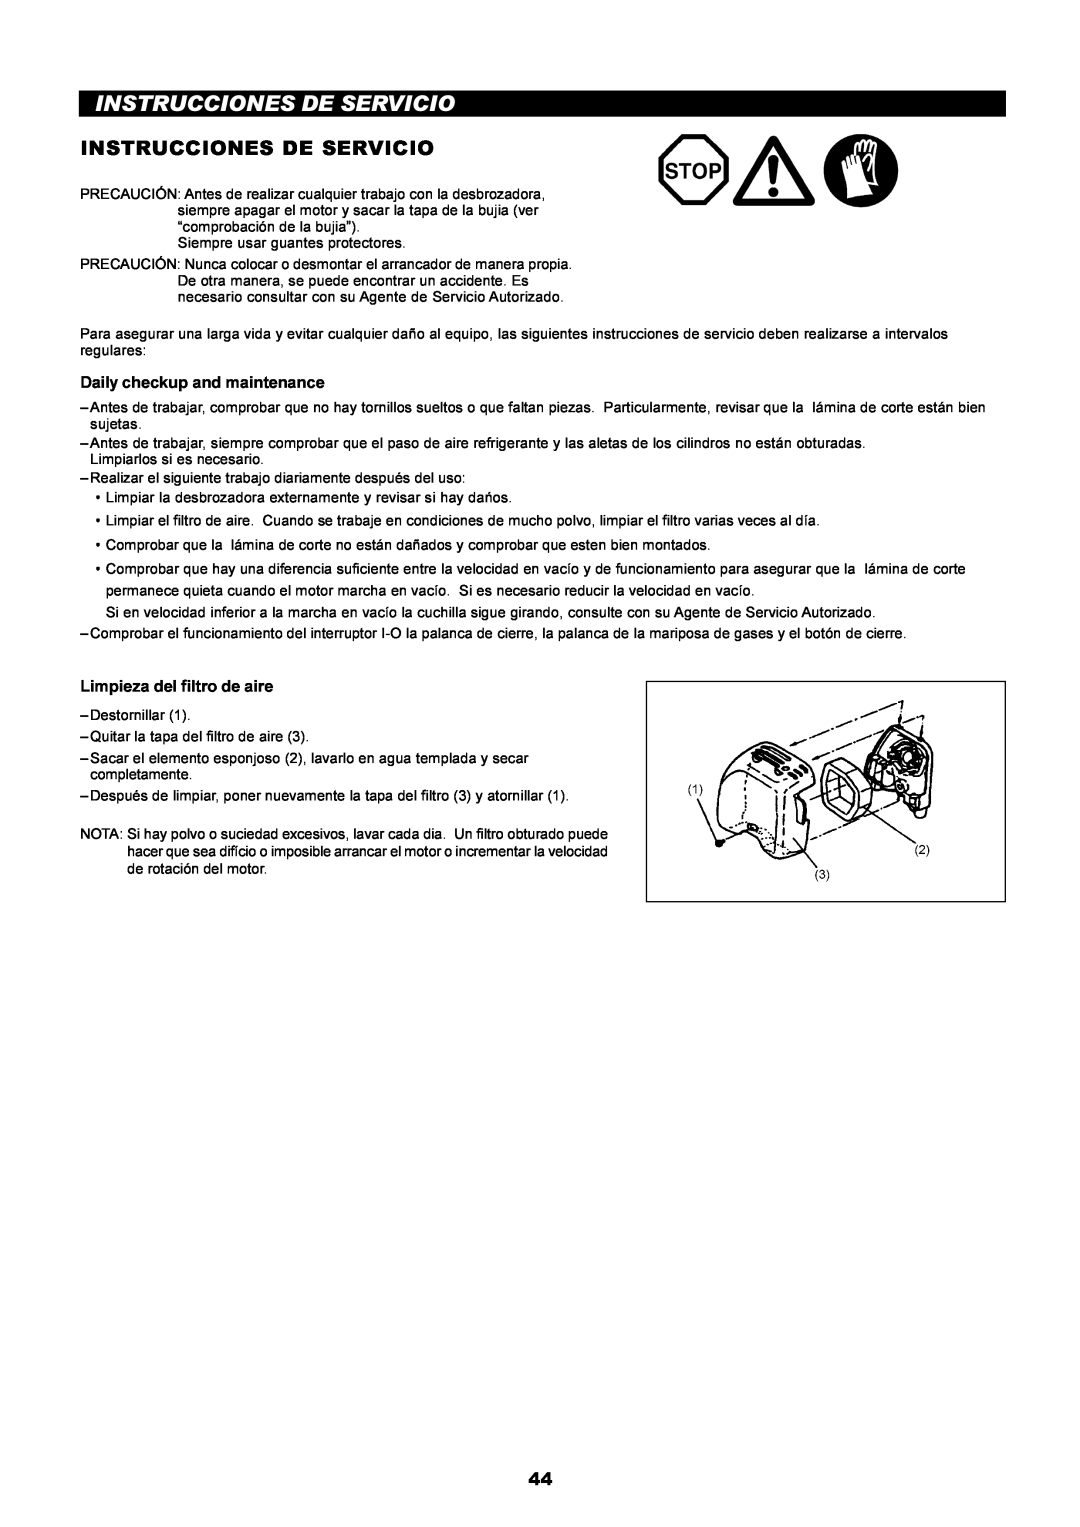 Dolmar PE-251 instruction manual Instrucciones De Servicio, Daily checkup and maintenance, Limpieza del filtro de aire 